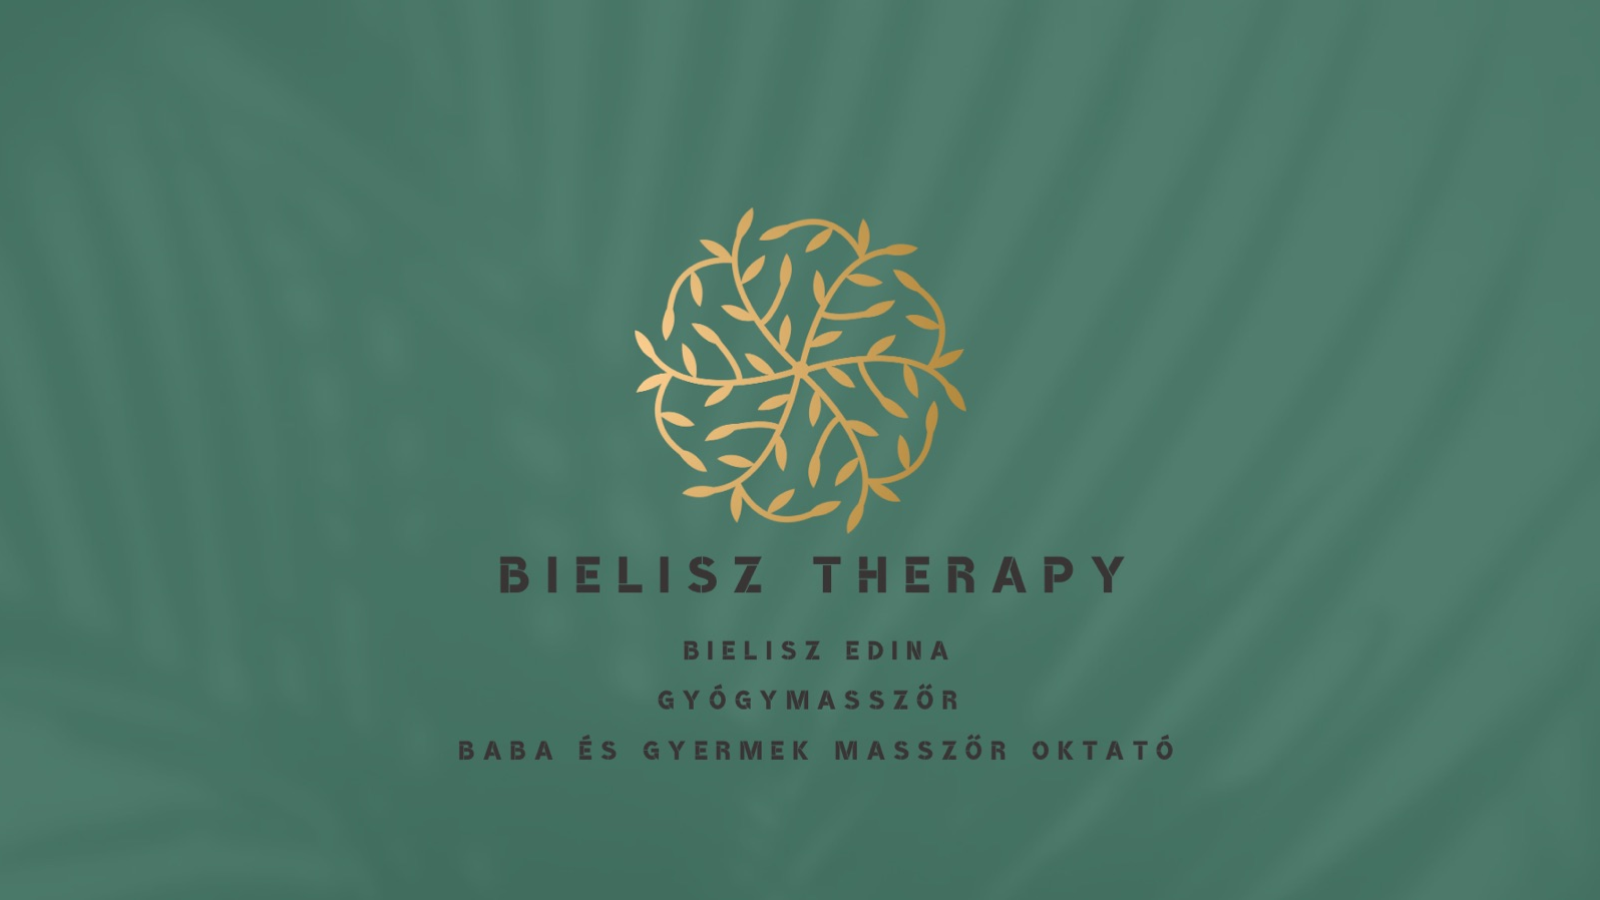 Bielisz Therapy